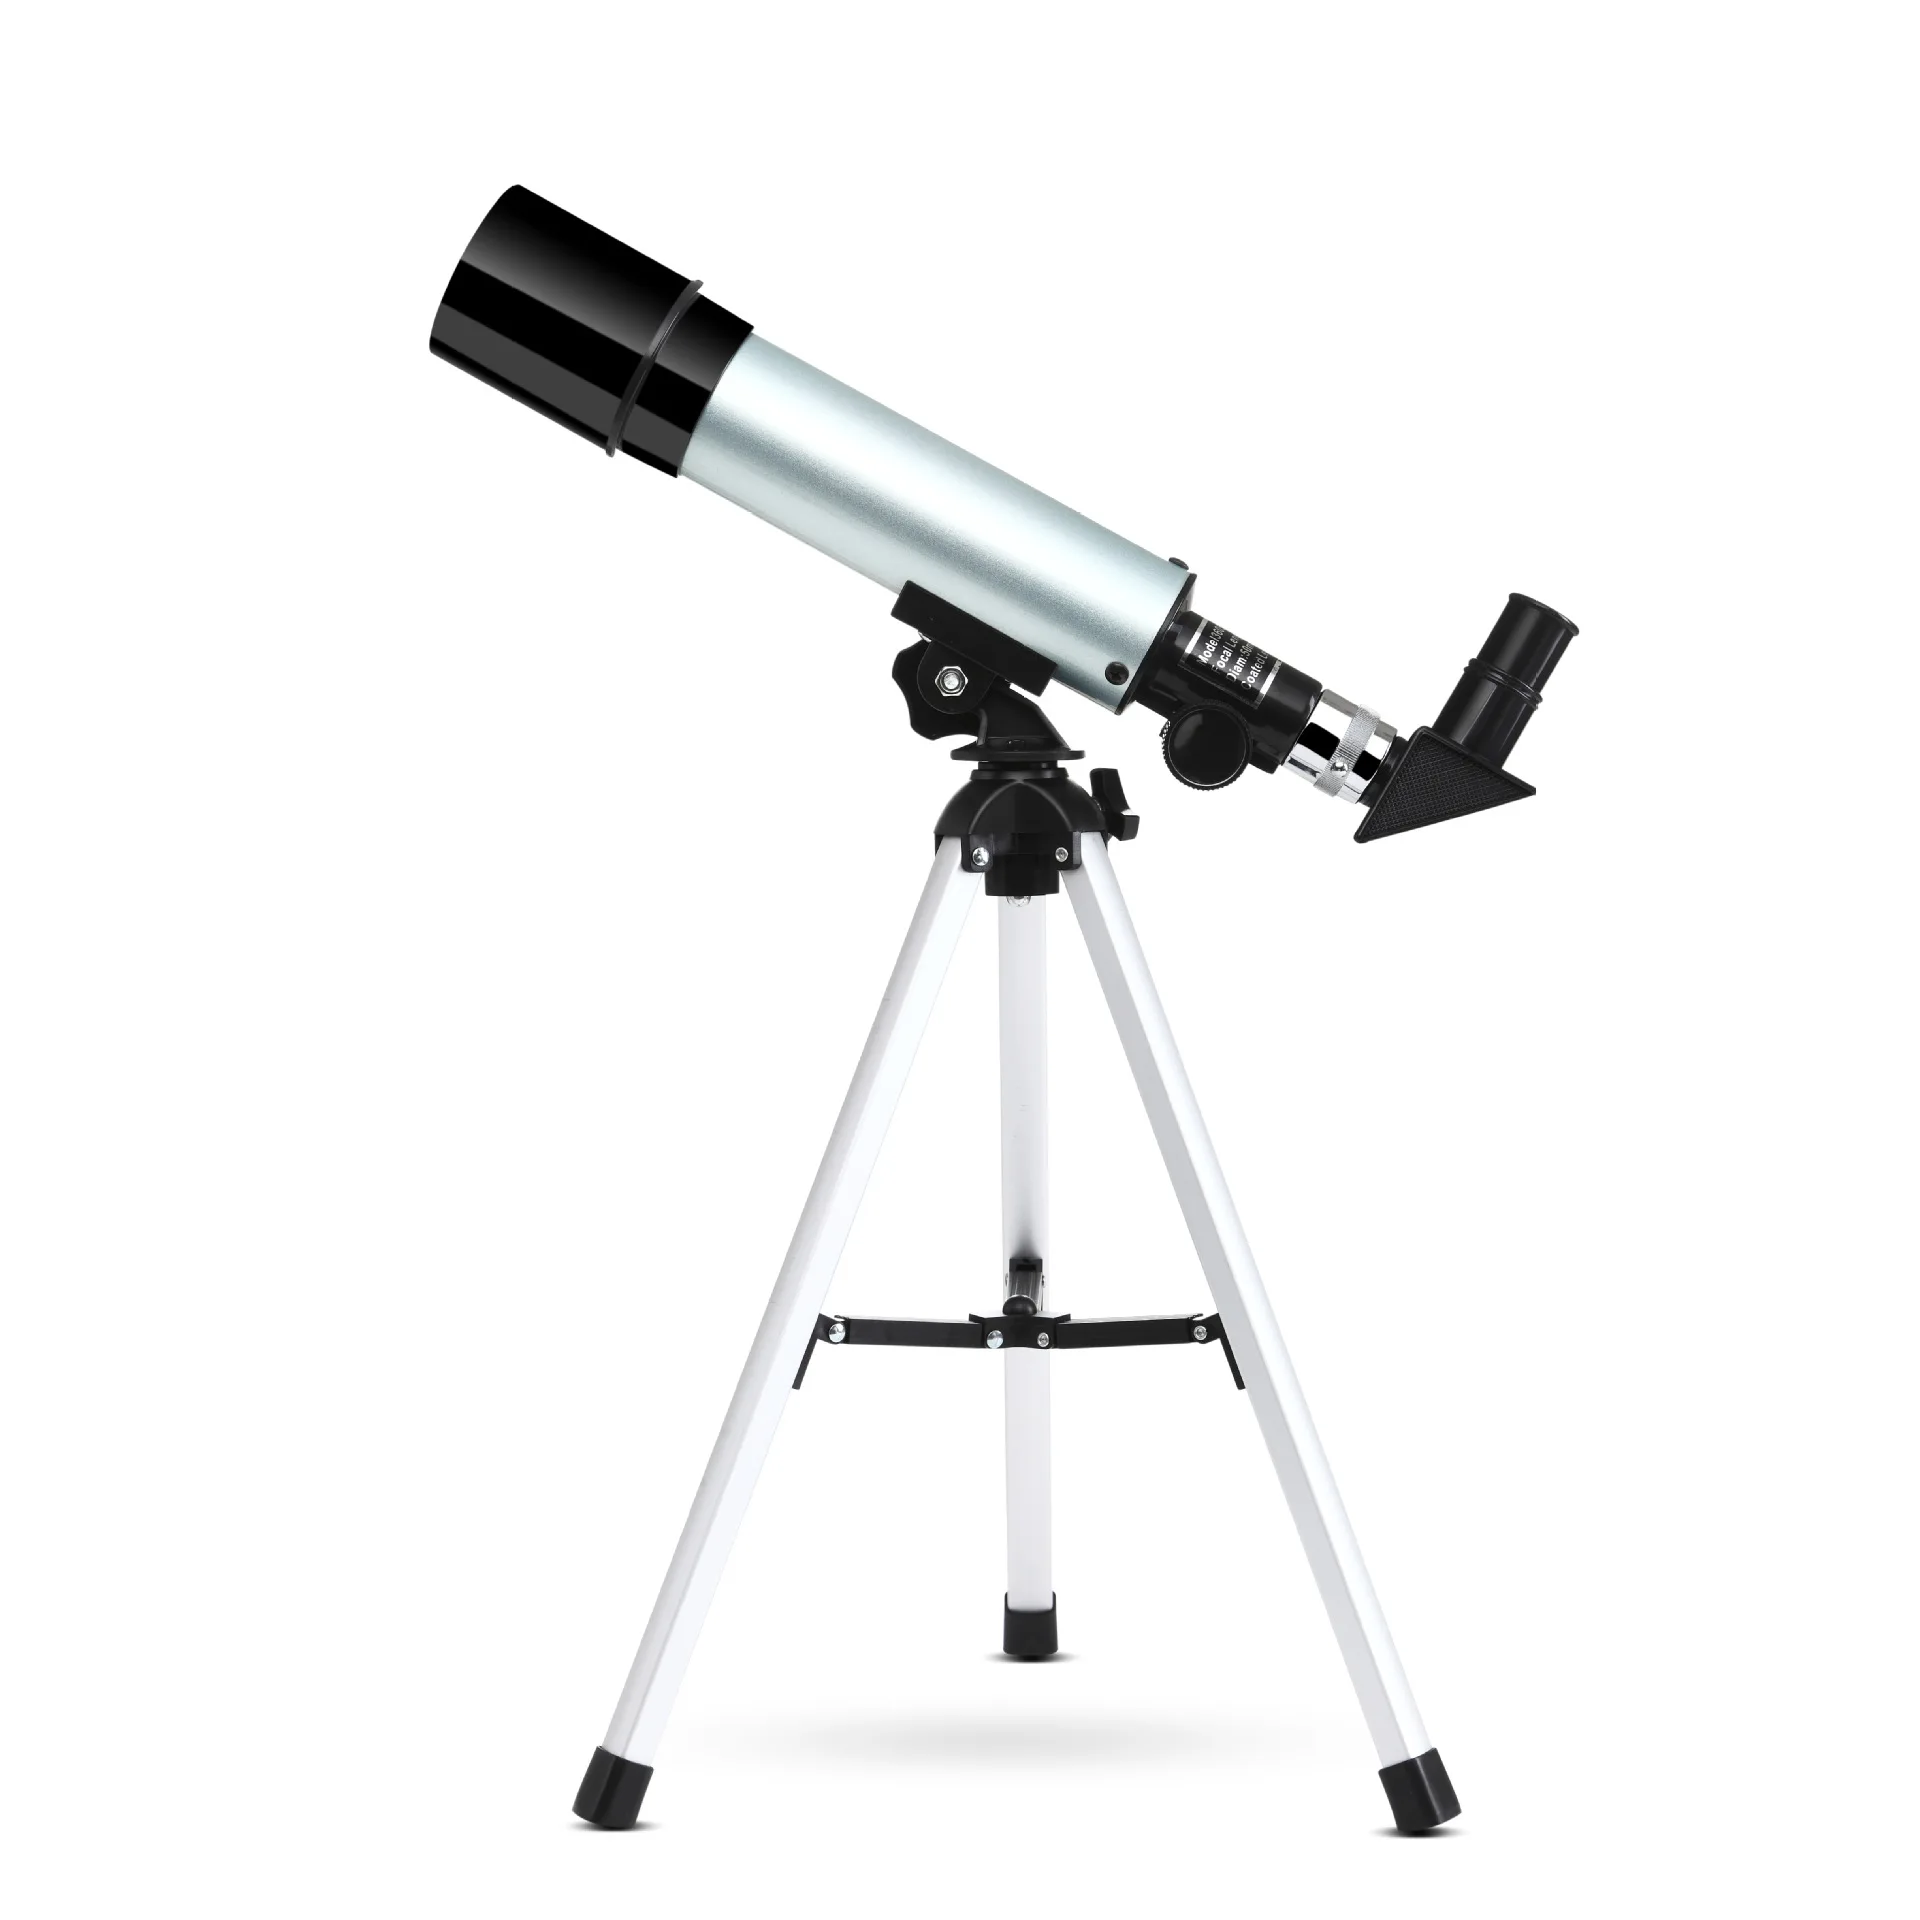 Skyoptıkst 50360 çocuk Astronomik Teleskop giriş seviyesi yıldız gözlem, yüksek güç ve yüksek çözünürlüklü Görüntü 1